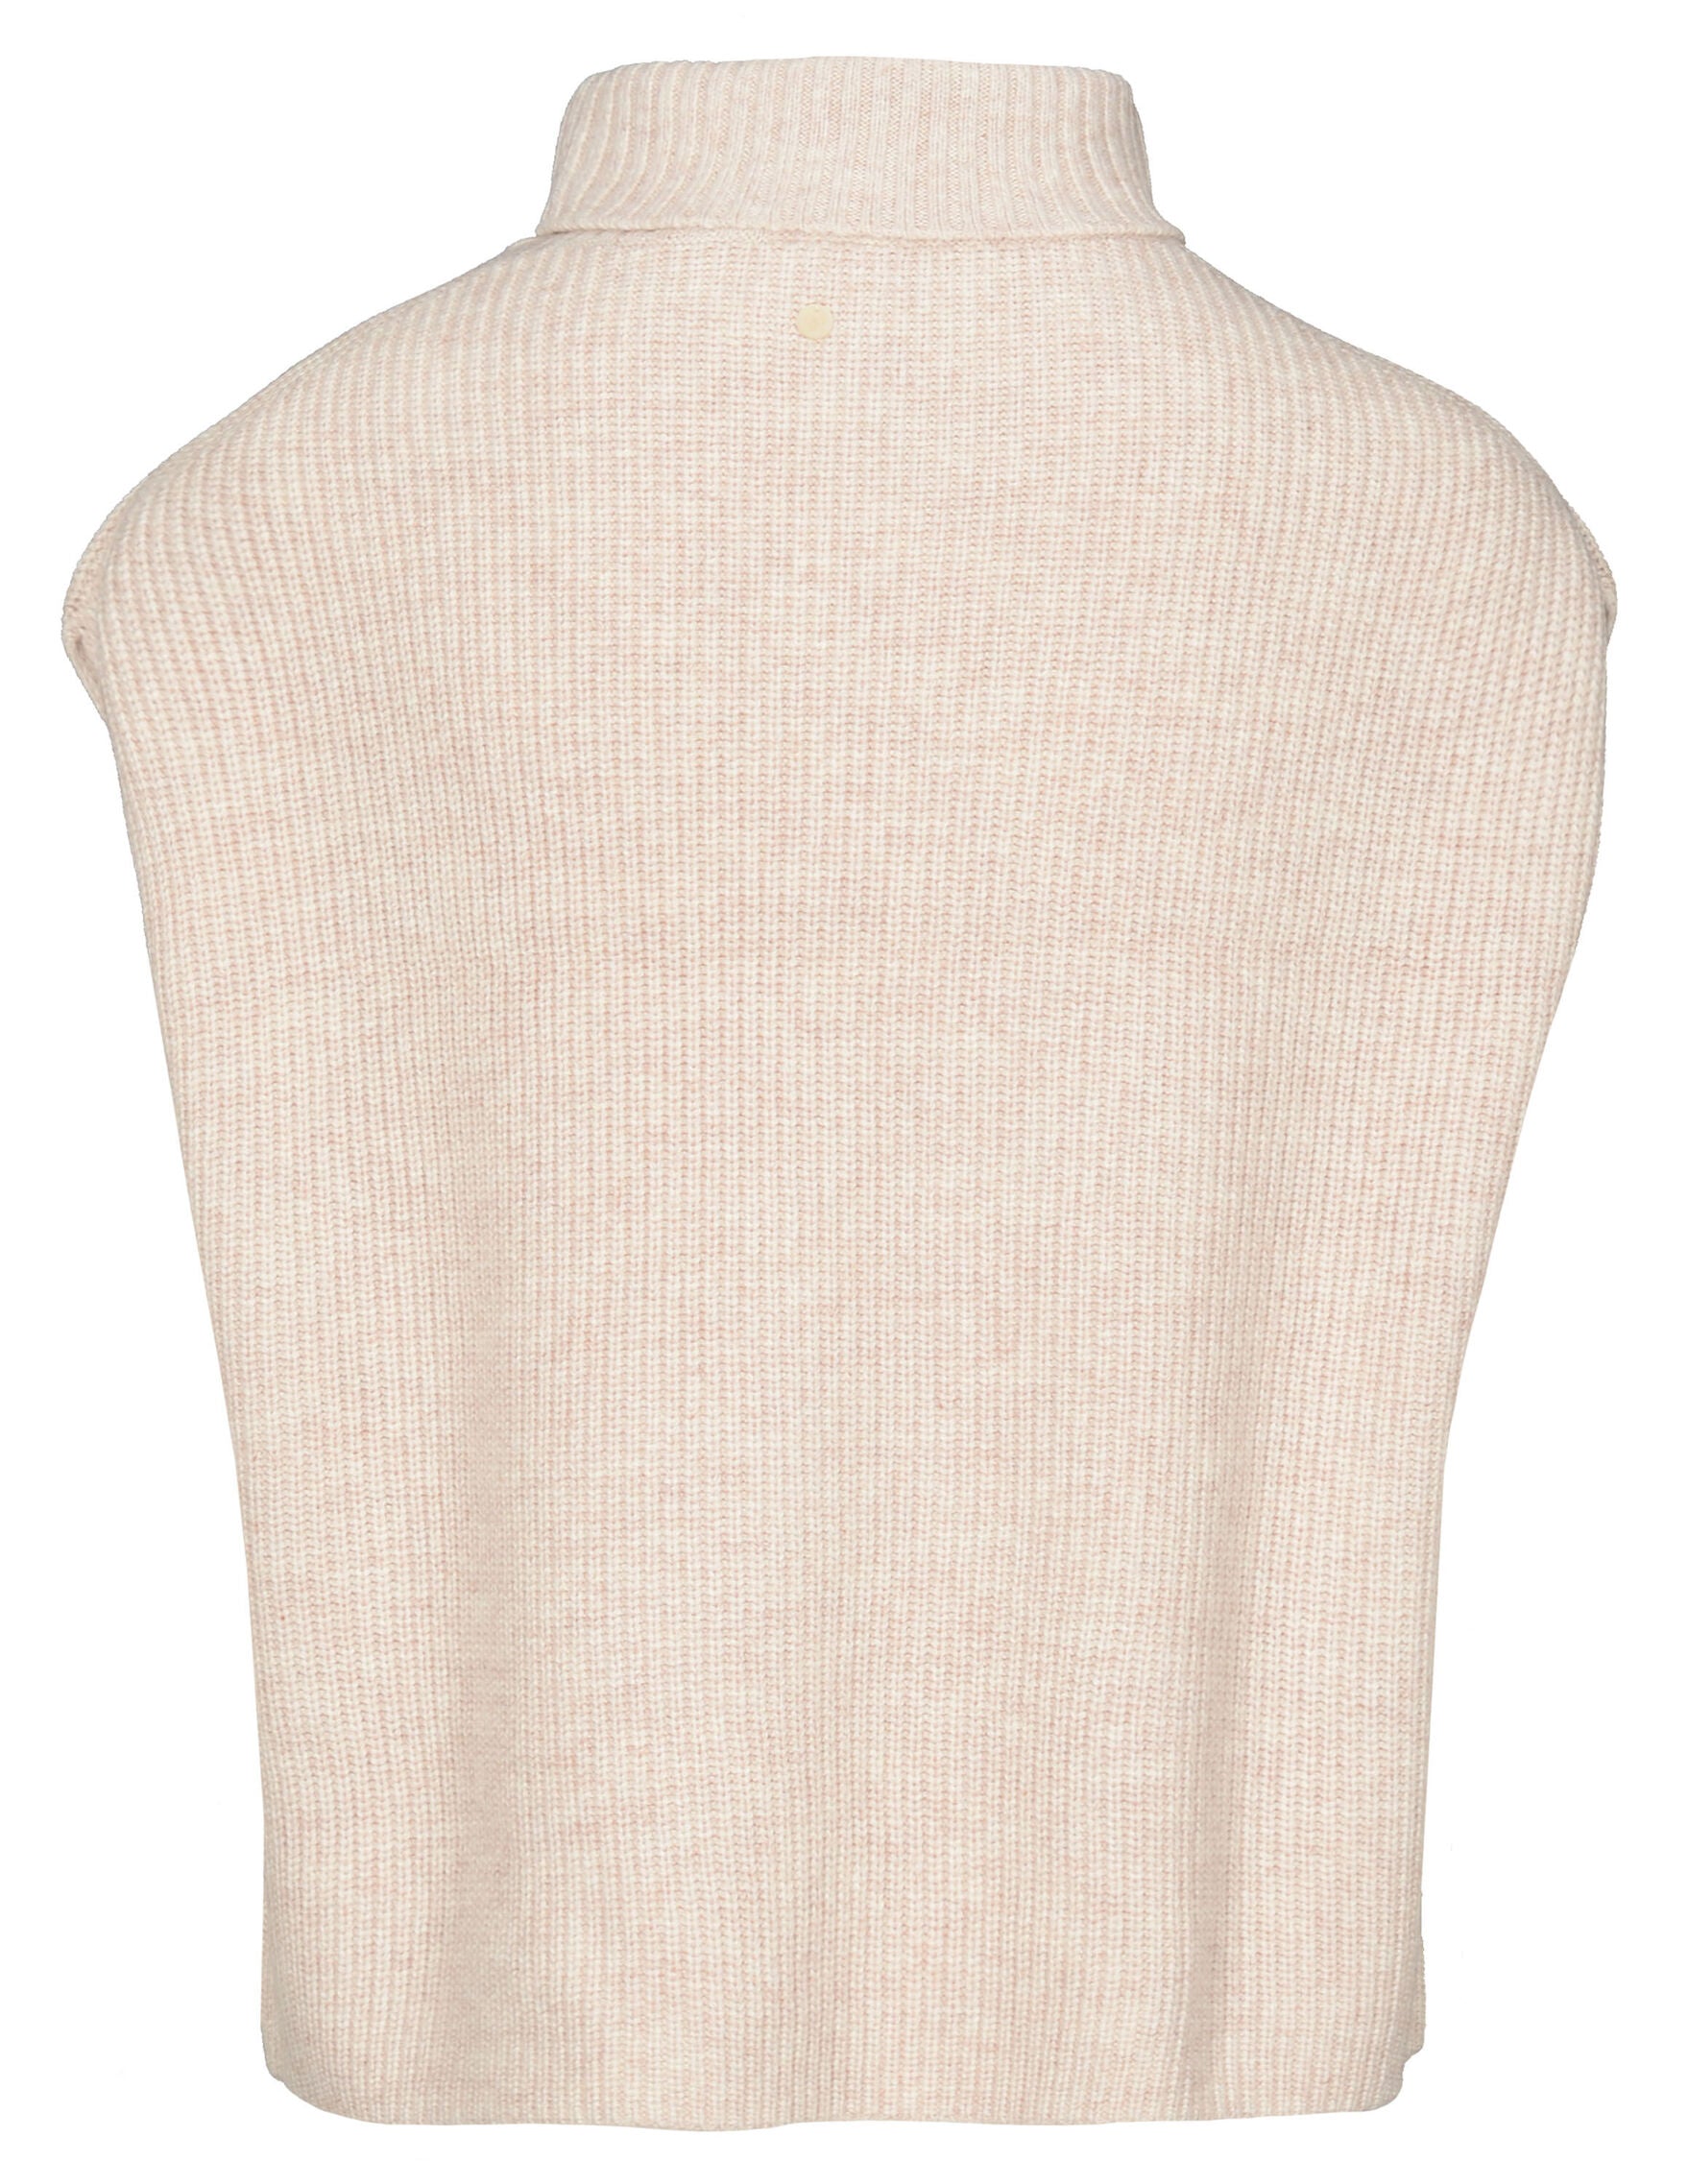 Turtleneck vest knitted